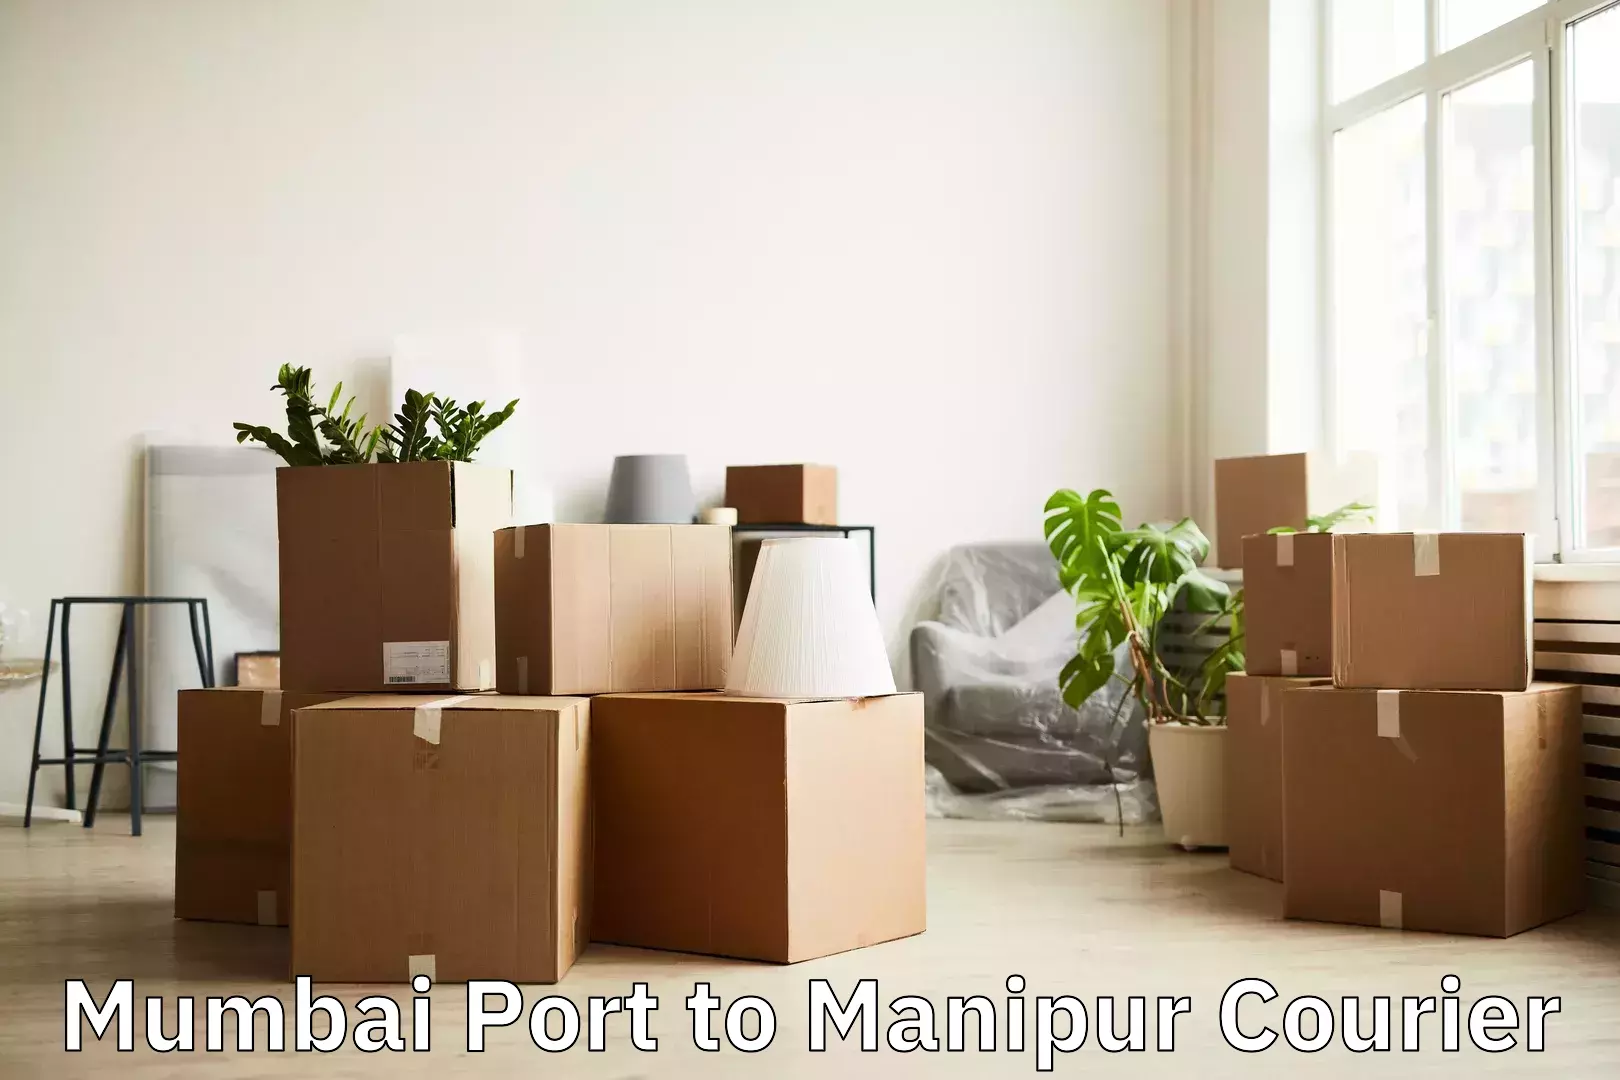 Luggage forwarding service Mumbai Port to Manipur